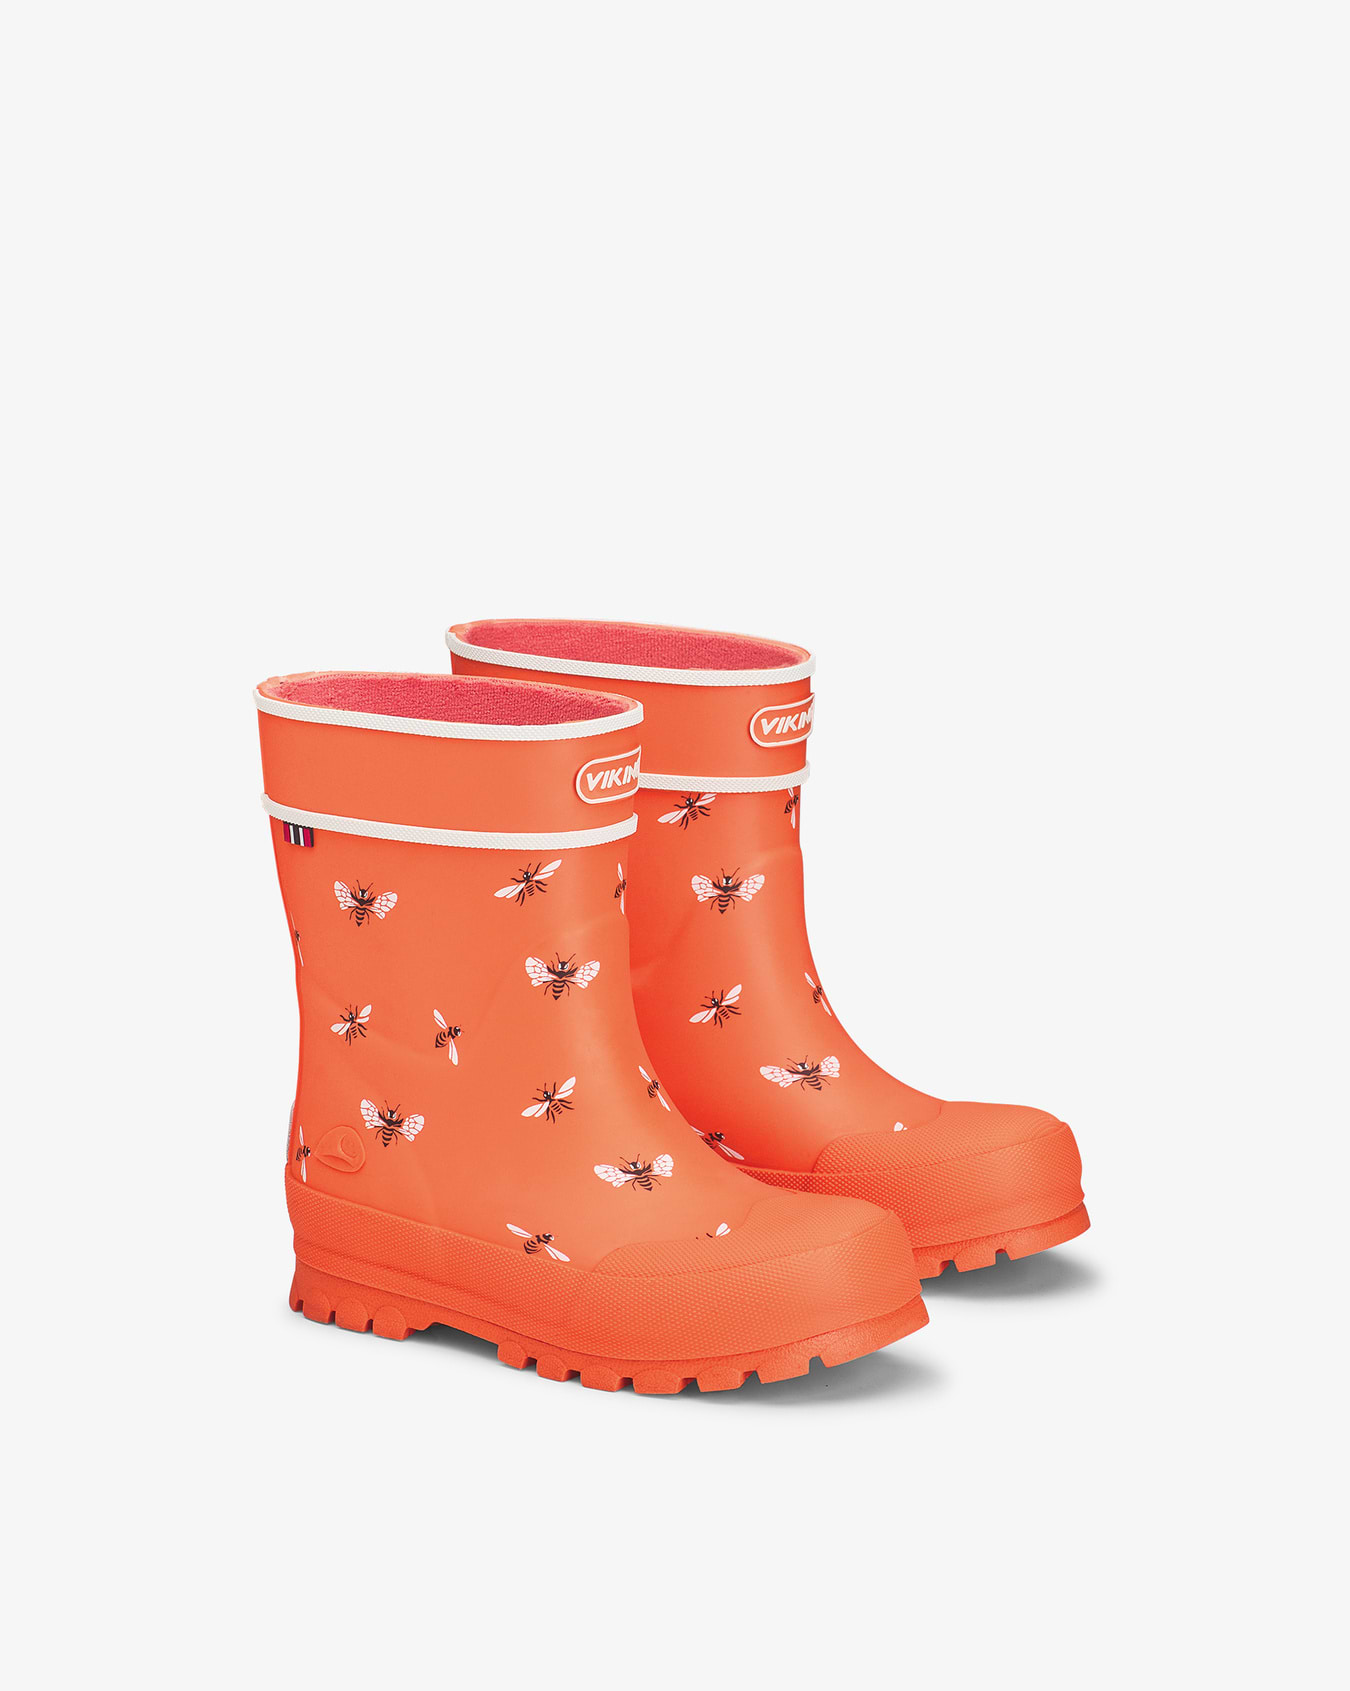 Alv Jolly Orange/White Rubber Boot